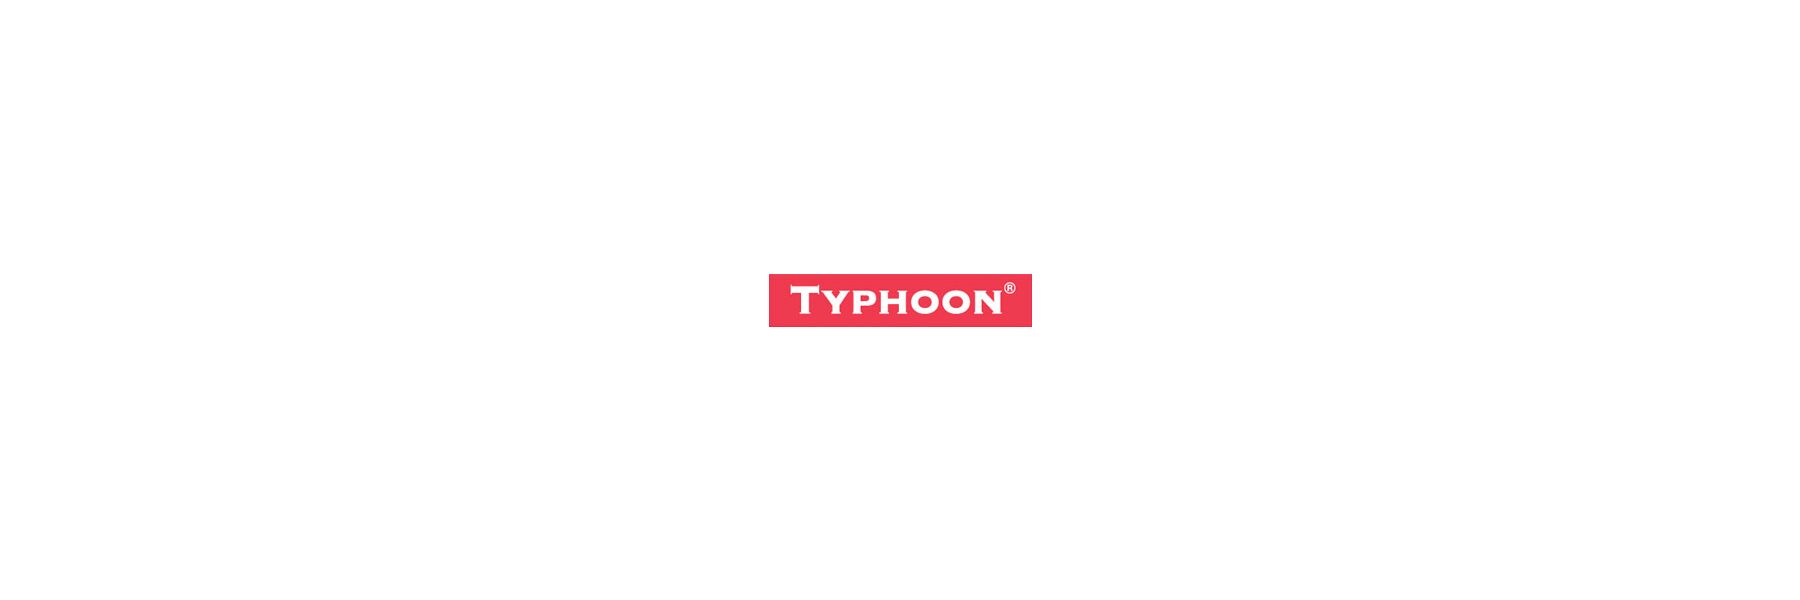 Typhoon steht für die Idee, die Gründer vor 20...